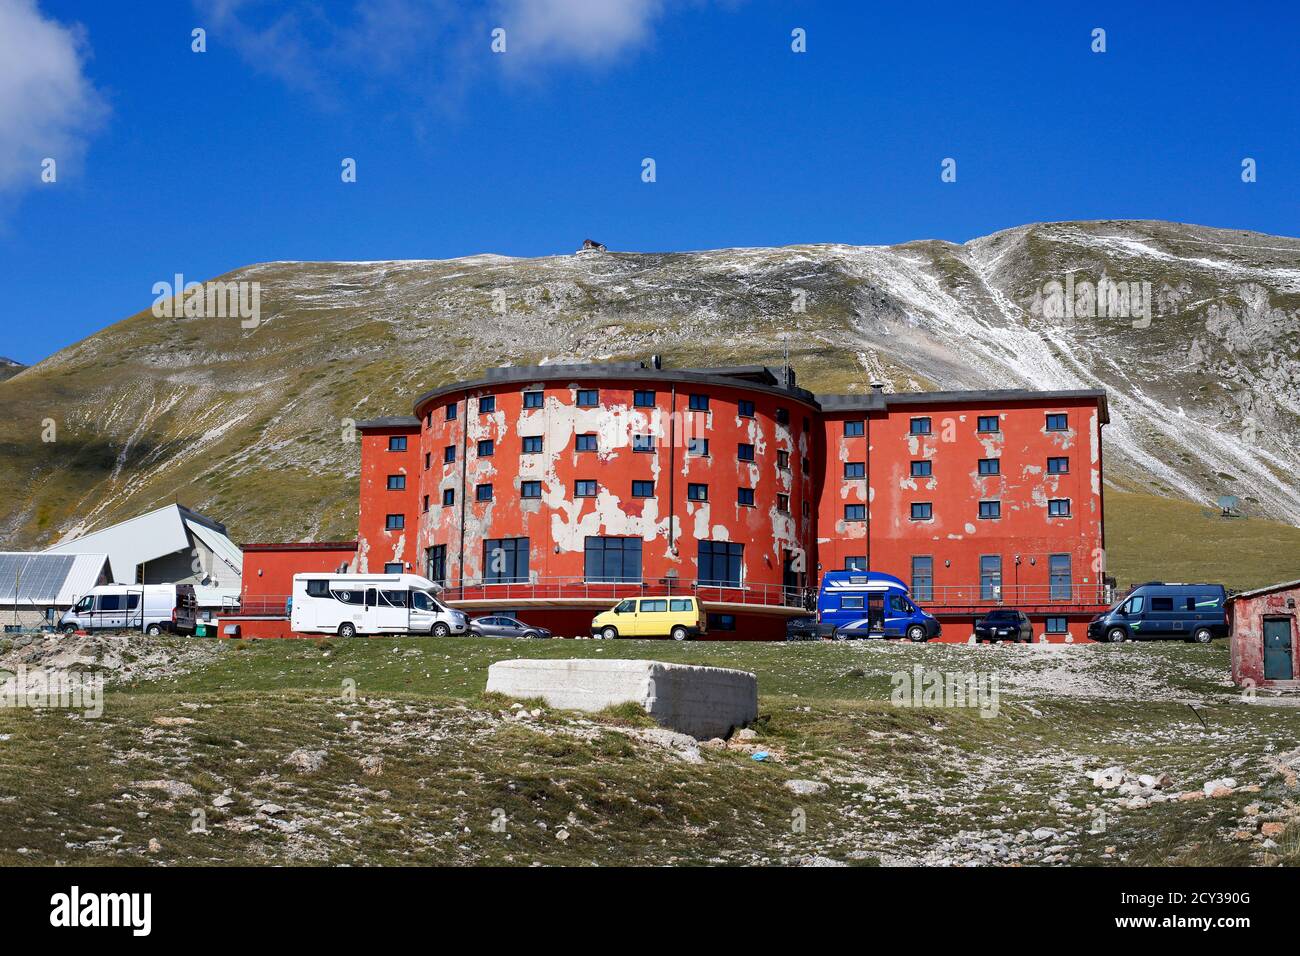 Campo Imperatore in the Gran Sasso, Abruzzo, Italy. Hotel Campo Imperatore is the red building. Stock Photo